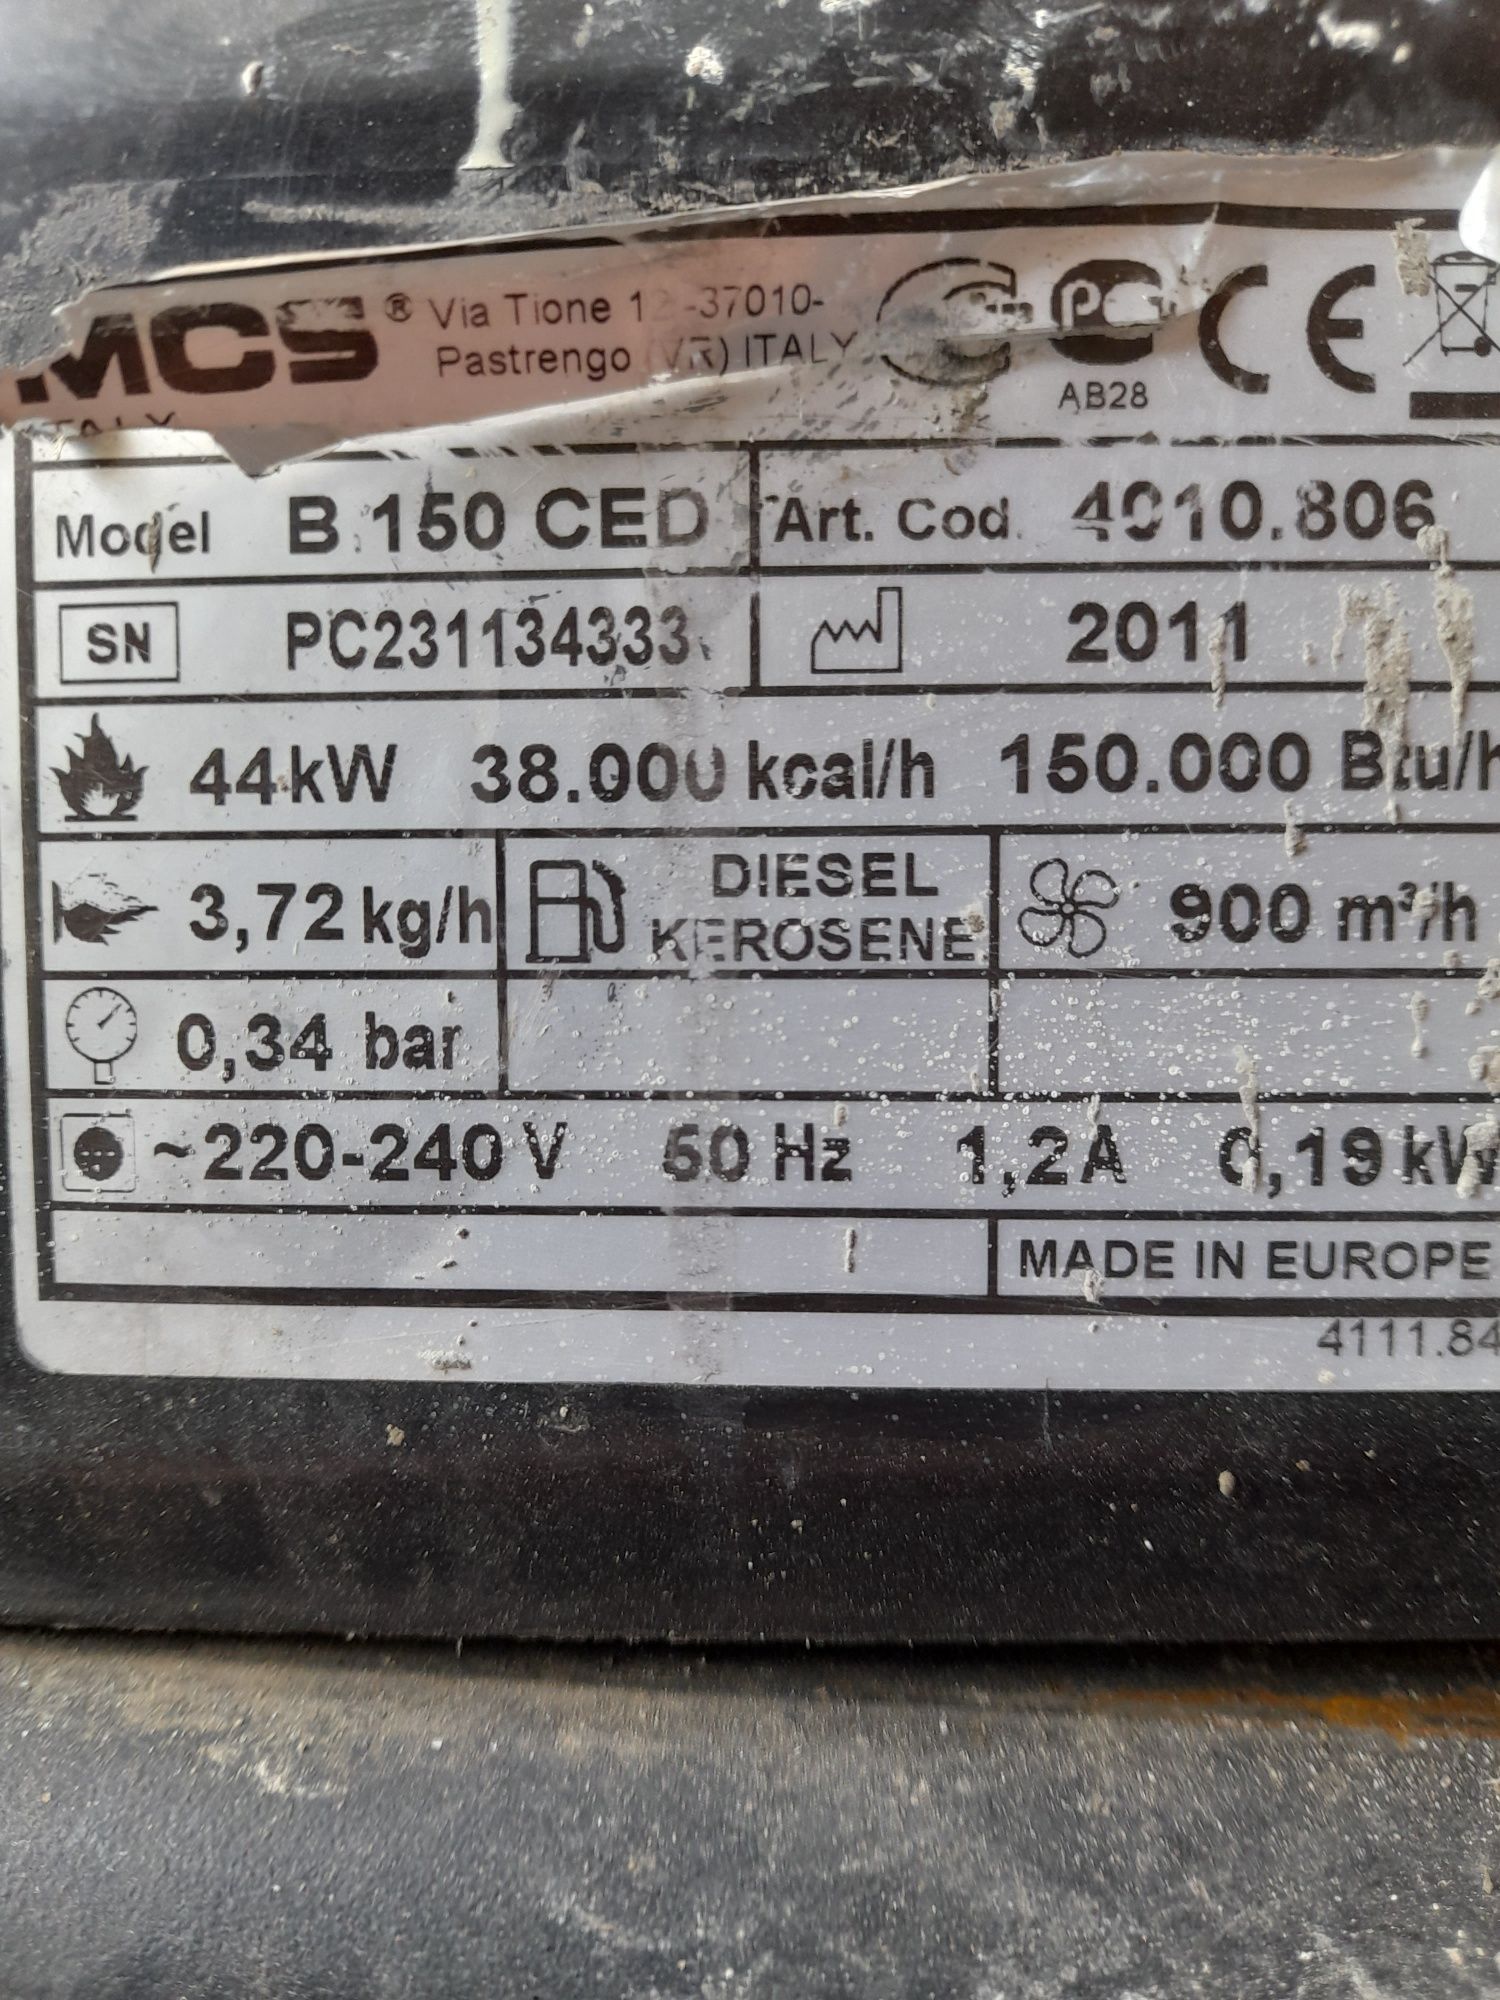 Sprzedam nagrzewnice master B150 CED 44 kW